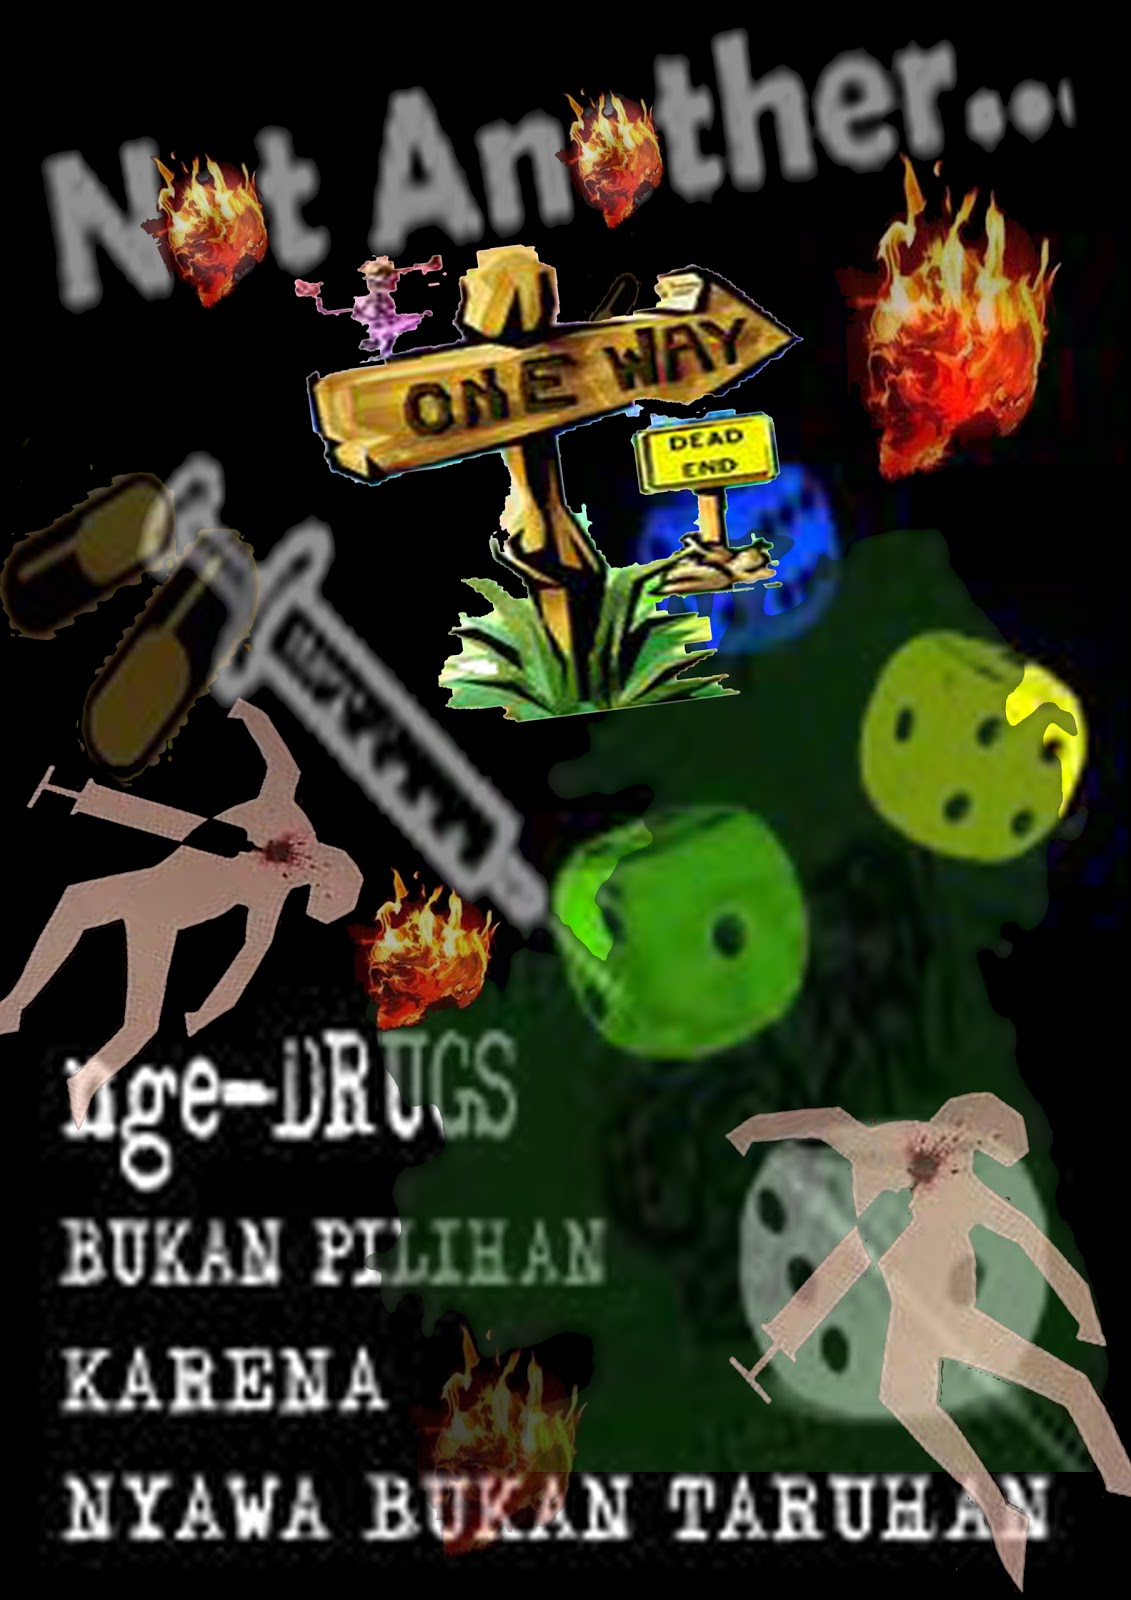 Contoh kalimat poster anti narkoba